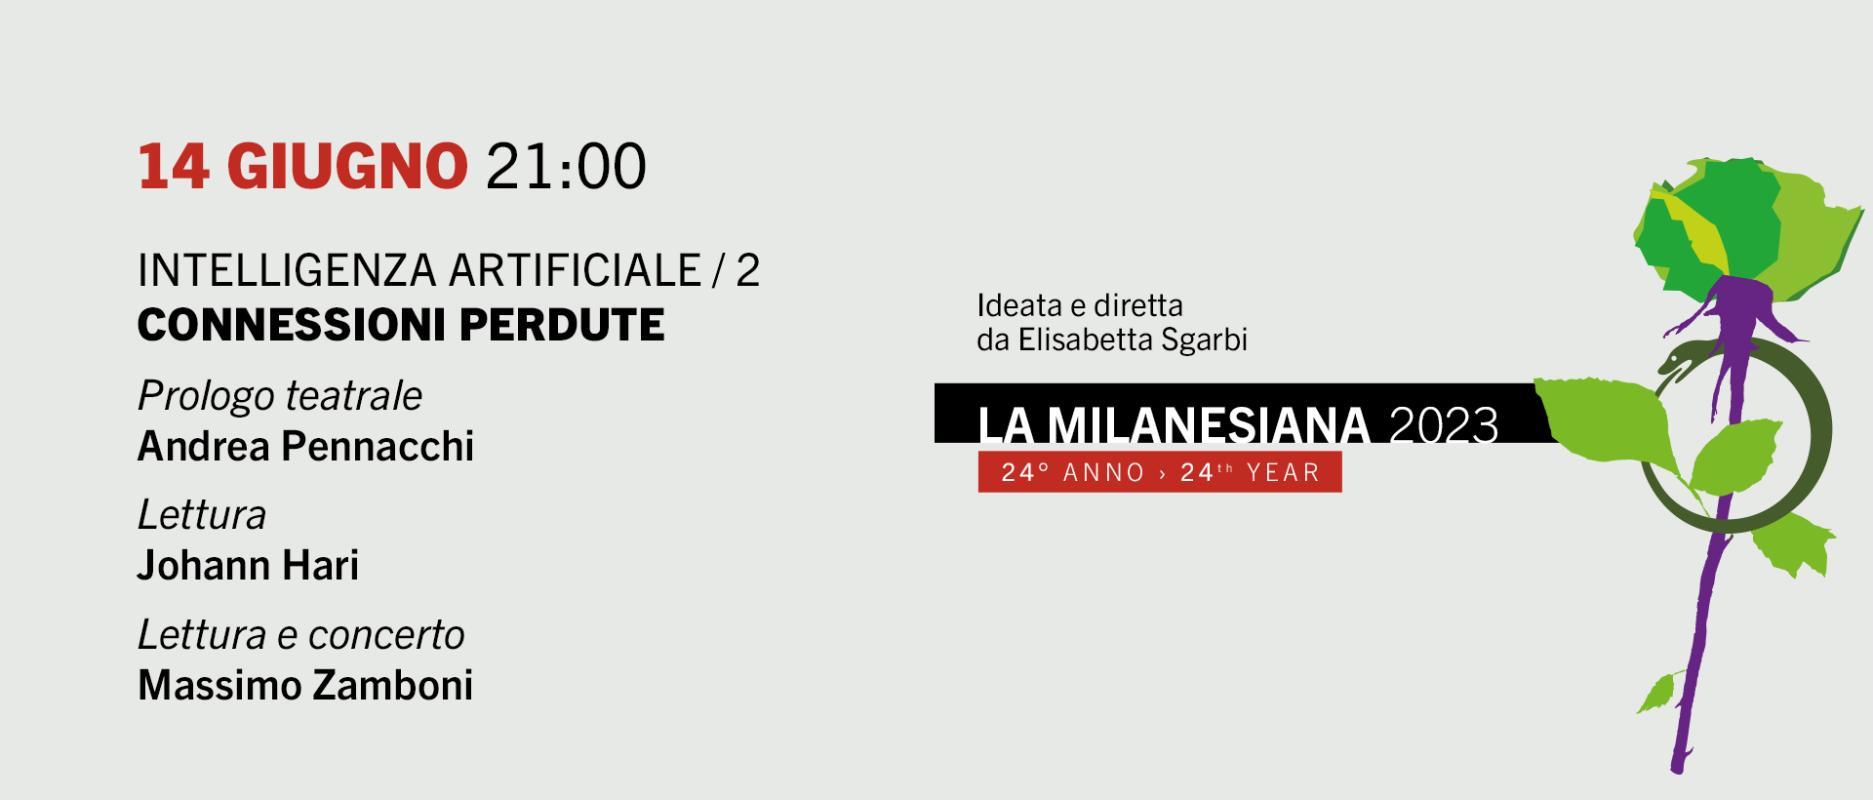 La Milanesiana - INTELLIGENZA ARTIFICIALE / 2 CONNESSIONI PERDUTE